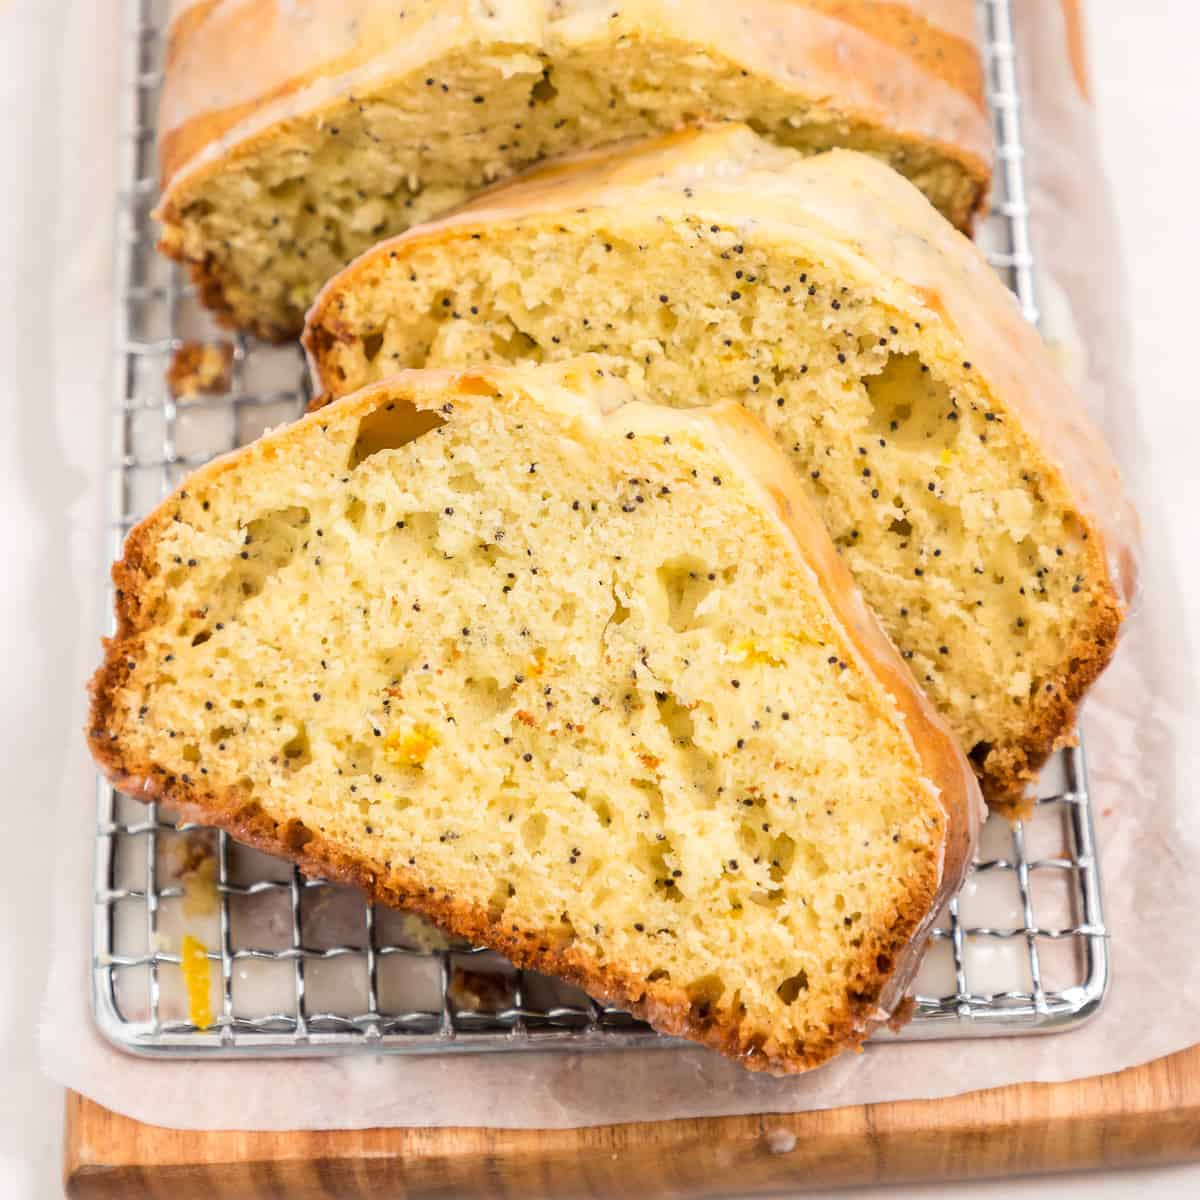 Lemon poppy seed bread